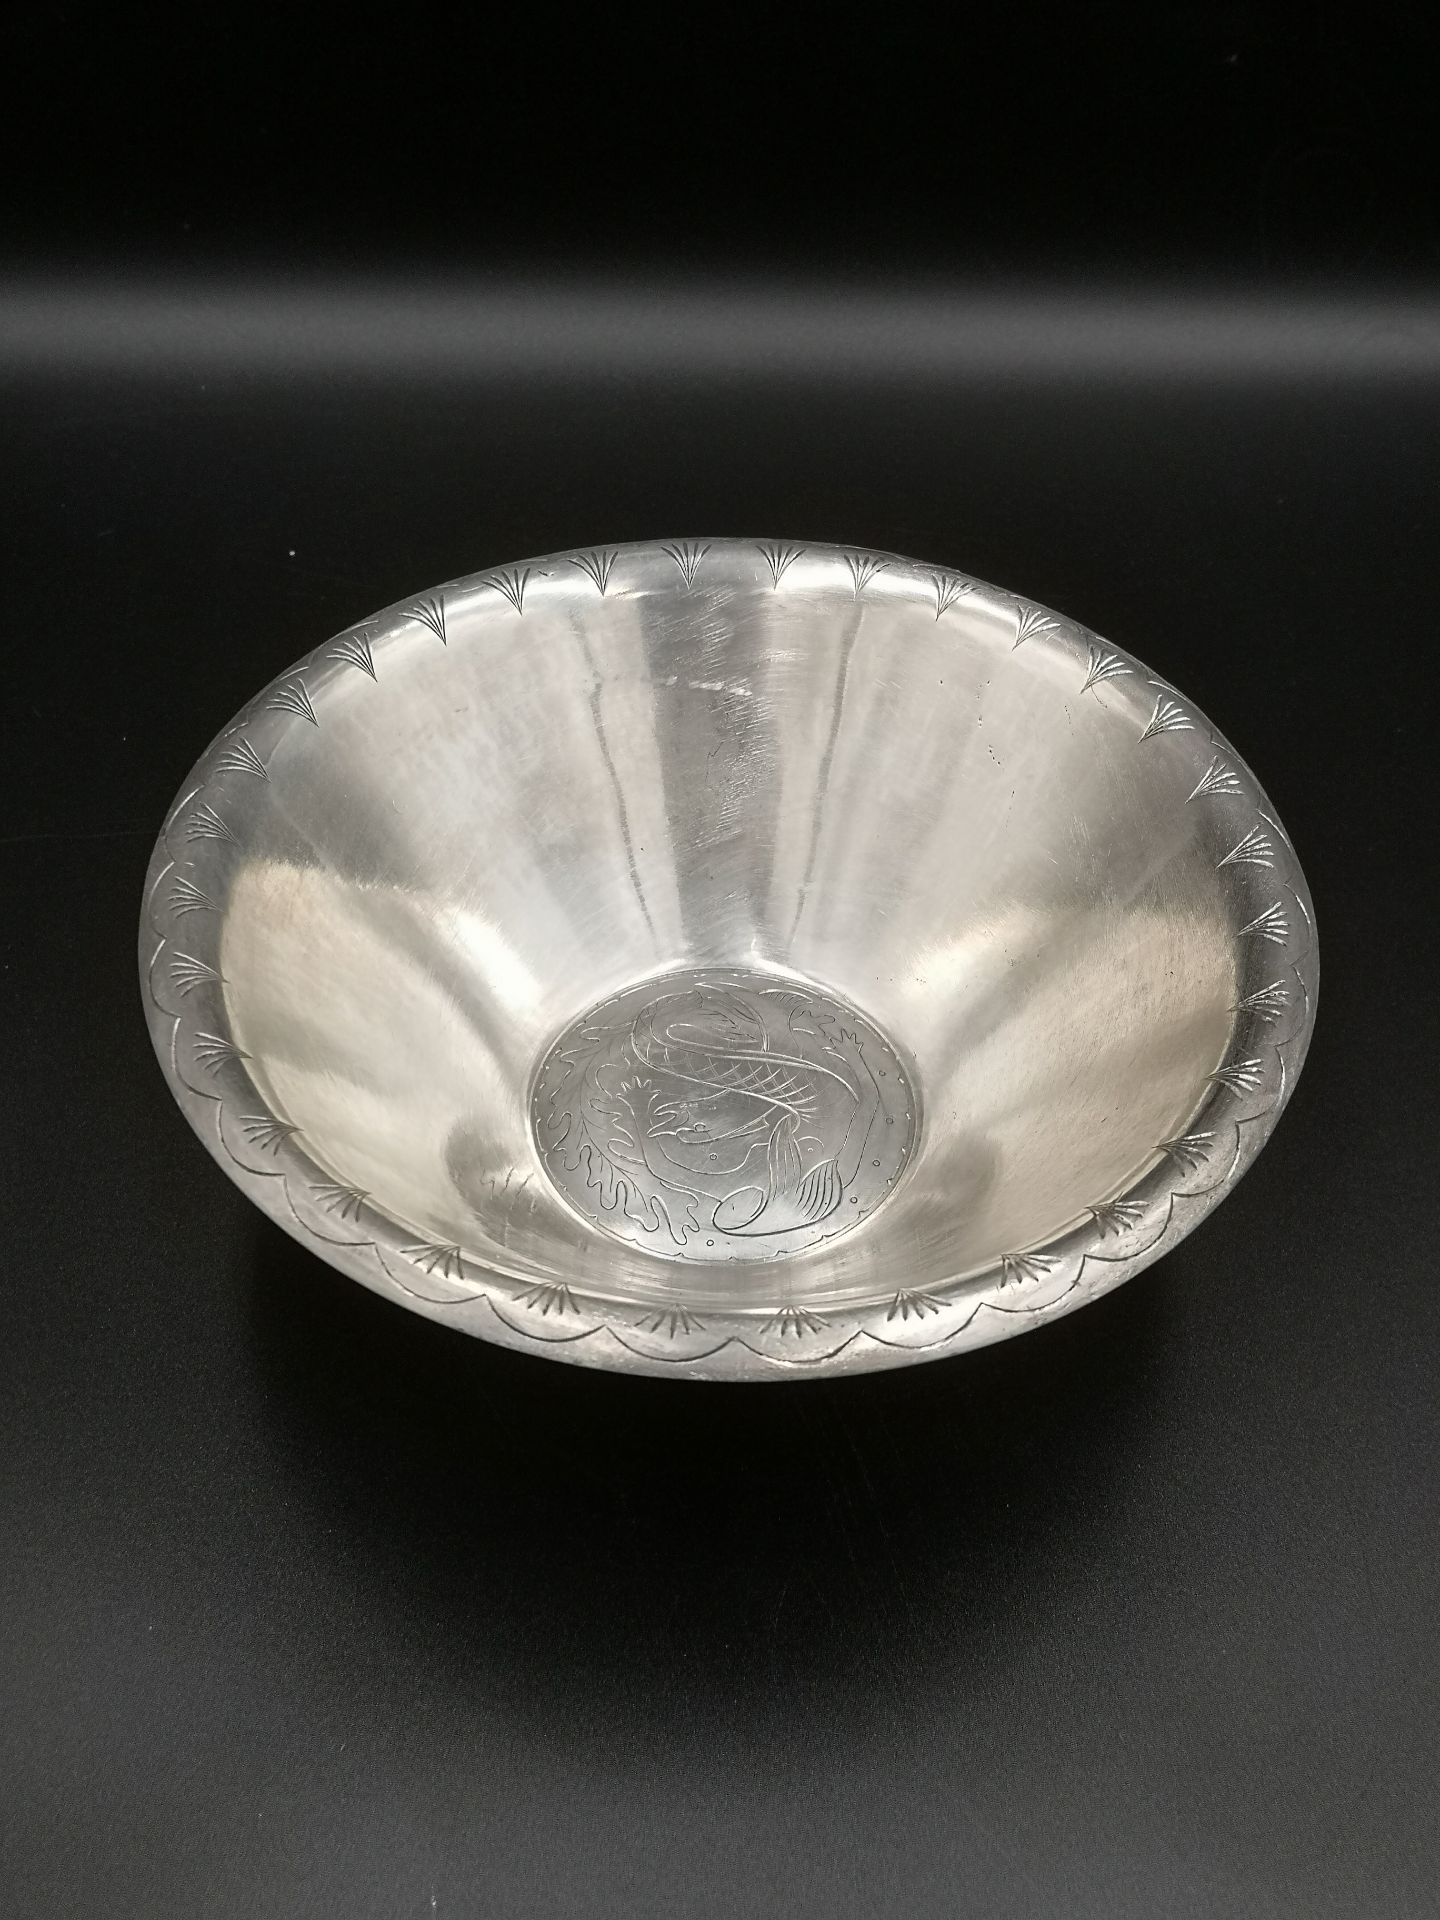 Garrard & Co silver bowl - Image 2 of 4